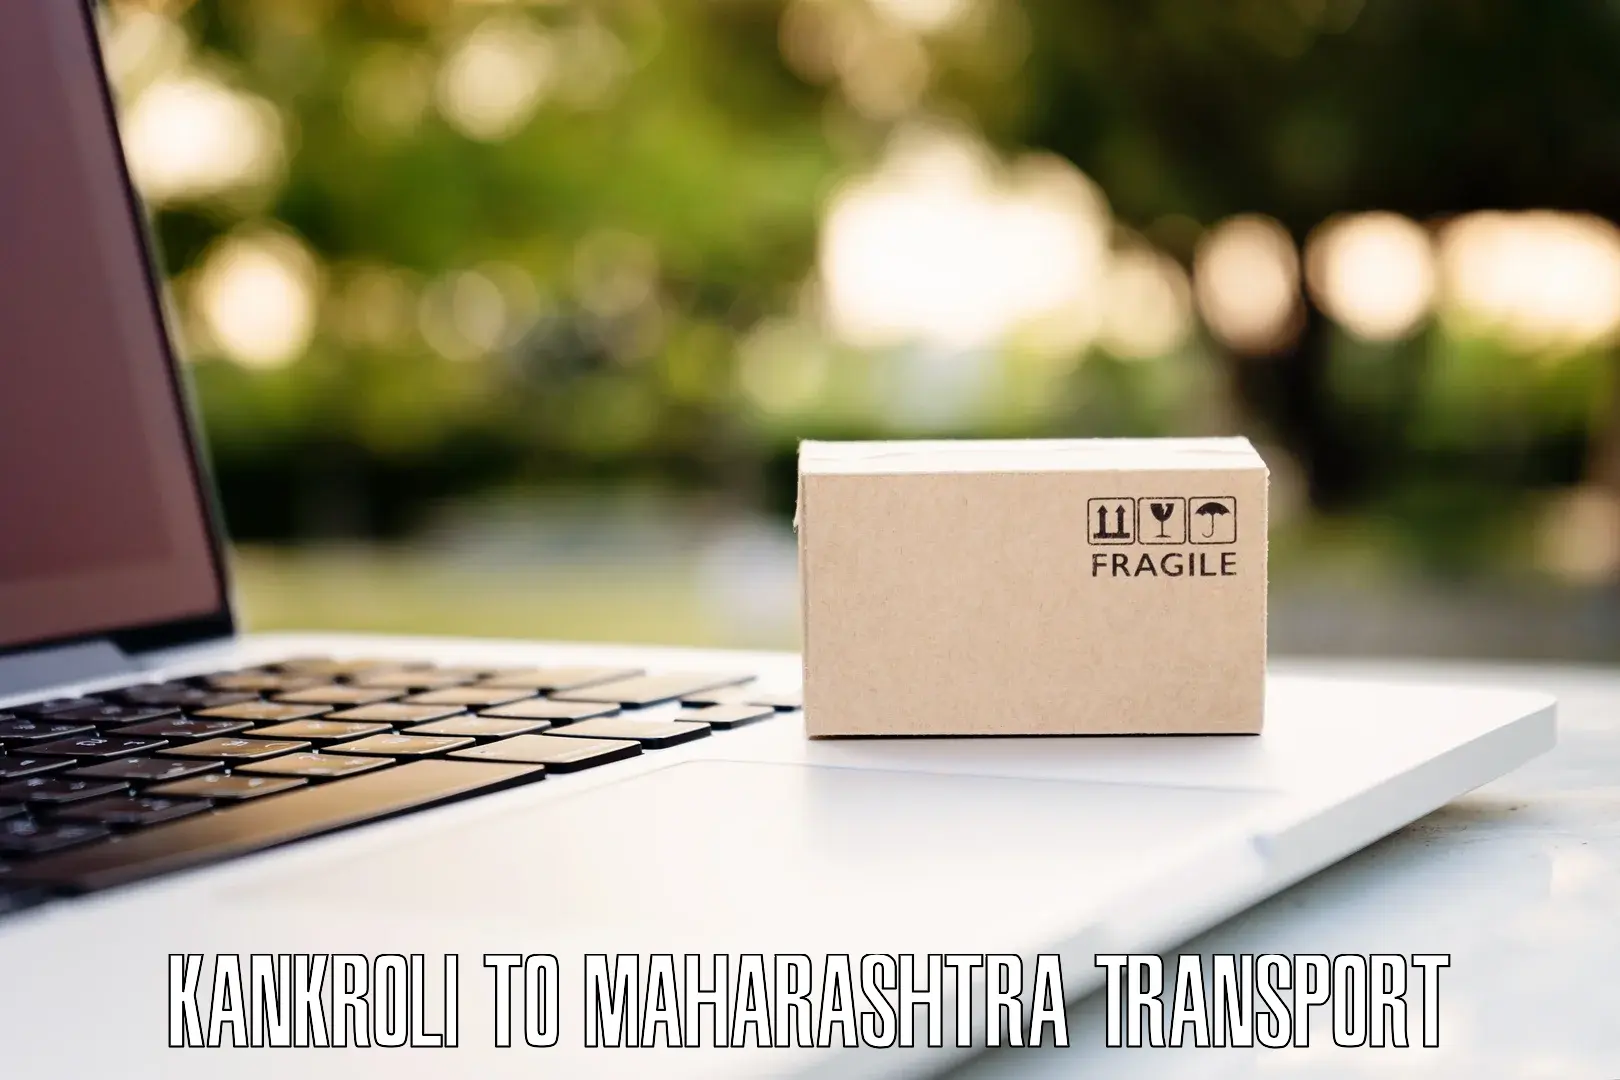 Delivery service Kankroli to Maharashtra